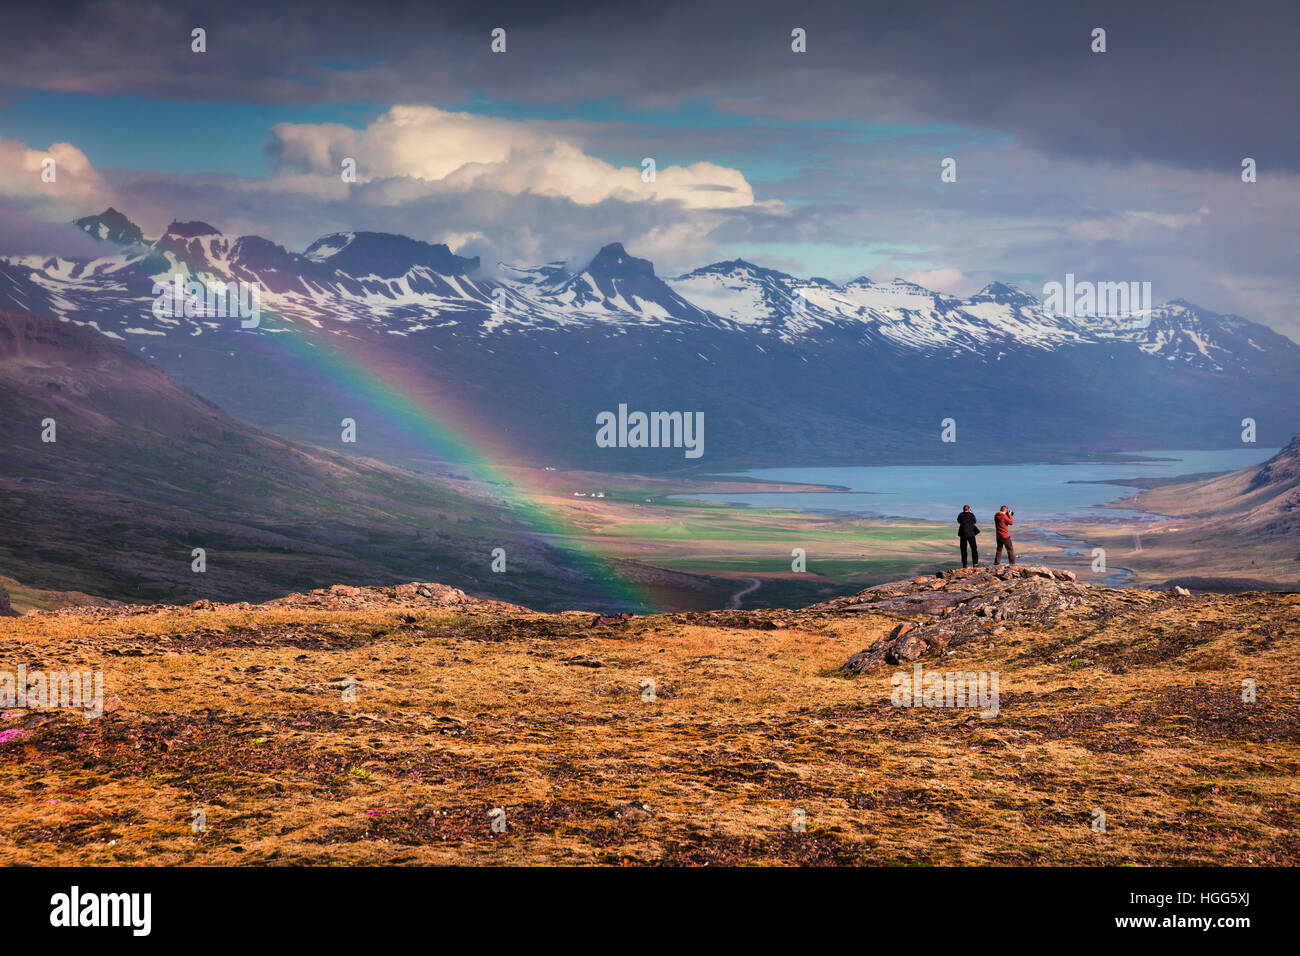 Zwei Fotografen nimmt Bild in einem leichten Regen und Regenbogen in den isländischen Bergen. Bunte Sommermorgen in der Island. Stockfoto